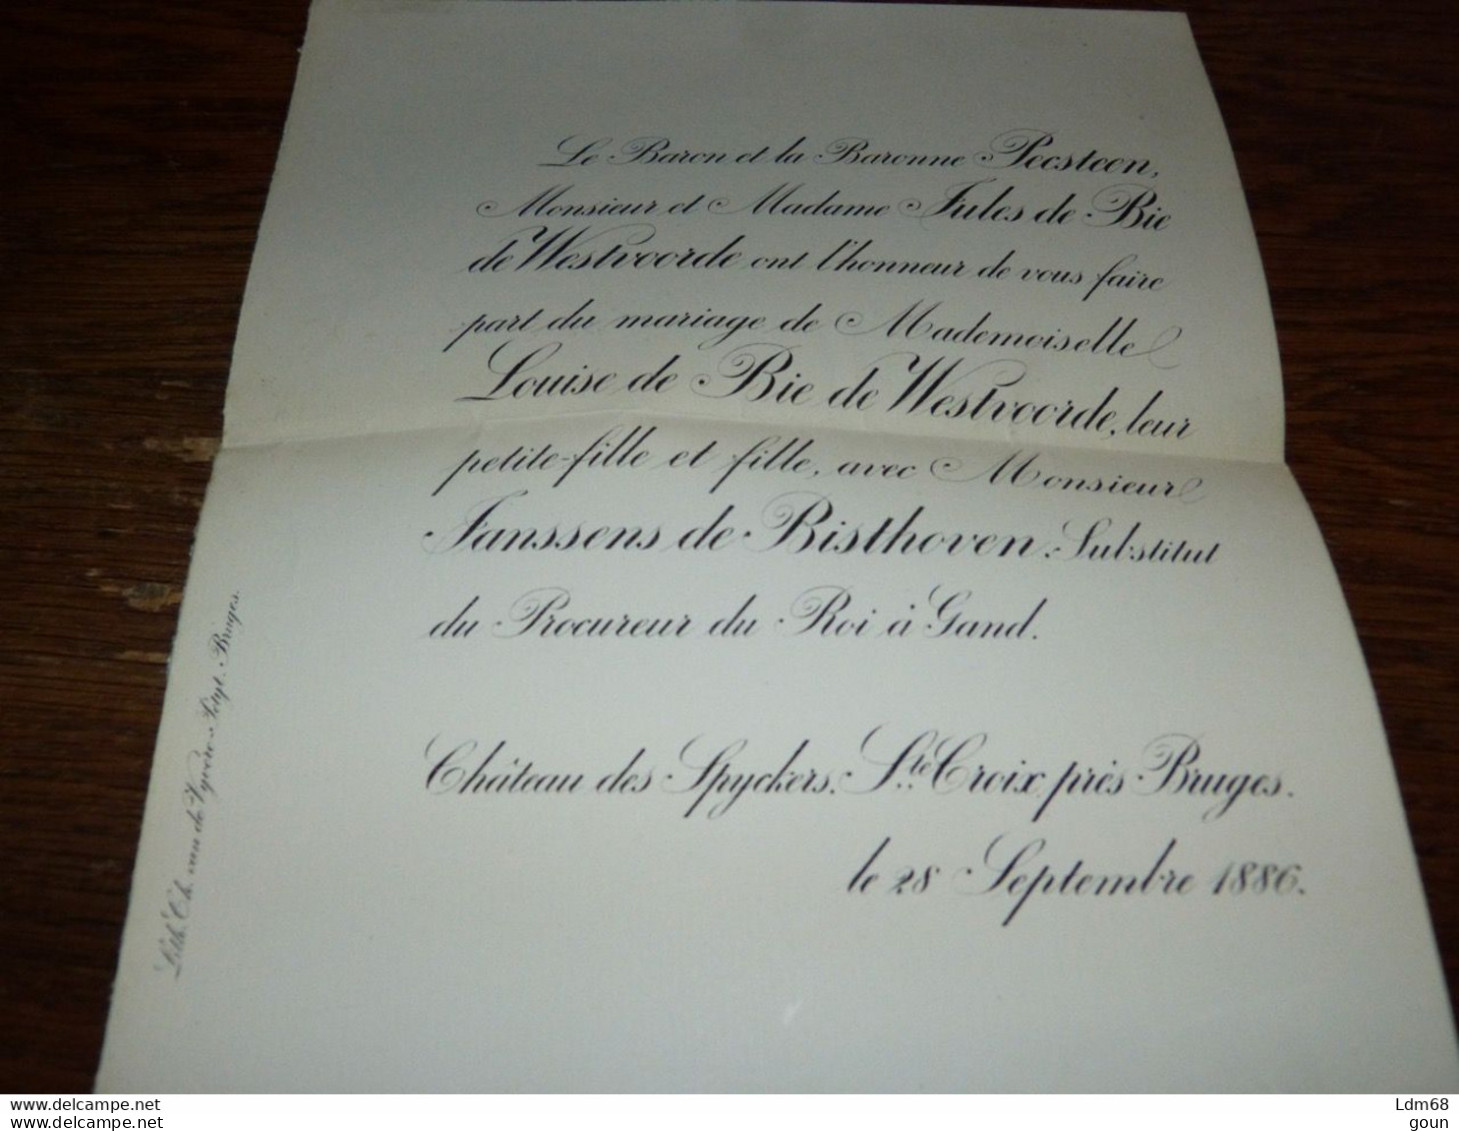 I21 Invitation Mariage Louise De Bie De Westvoorde M Janssens De Bisthoven Chat. Des Spycker 1886 - Mariage